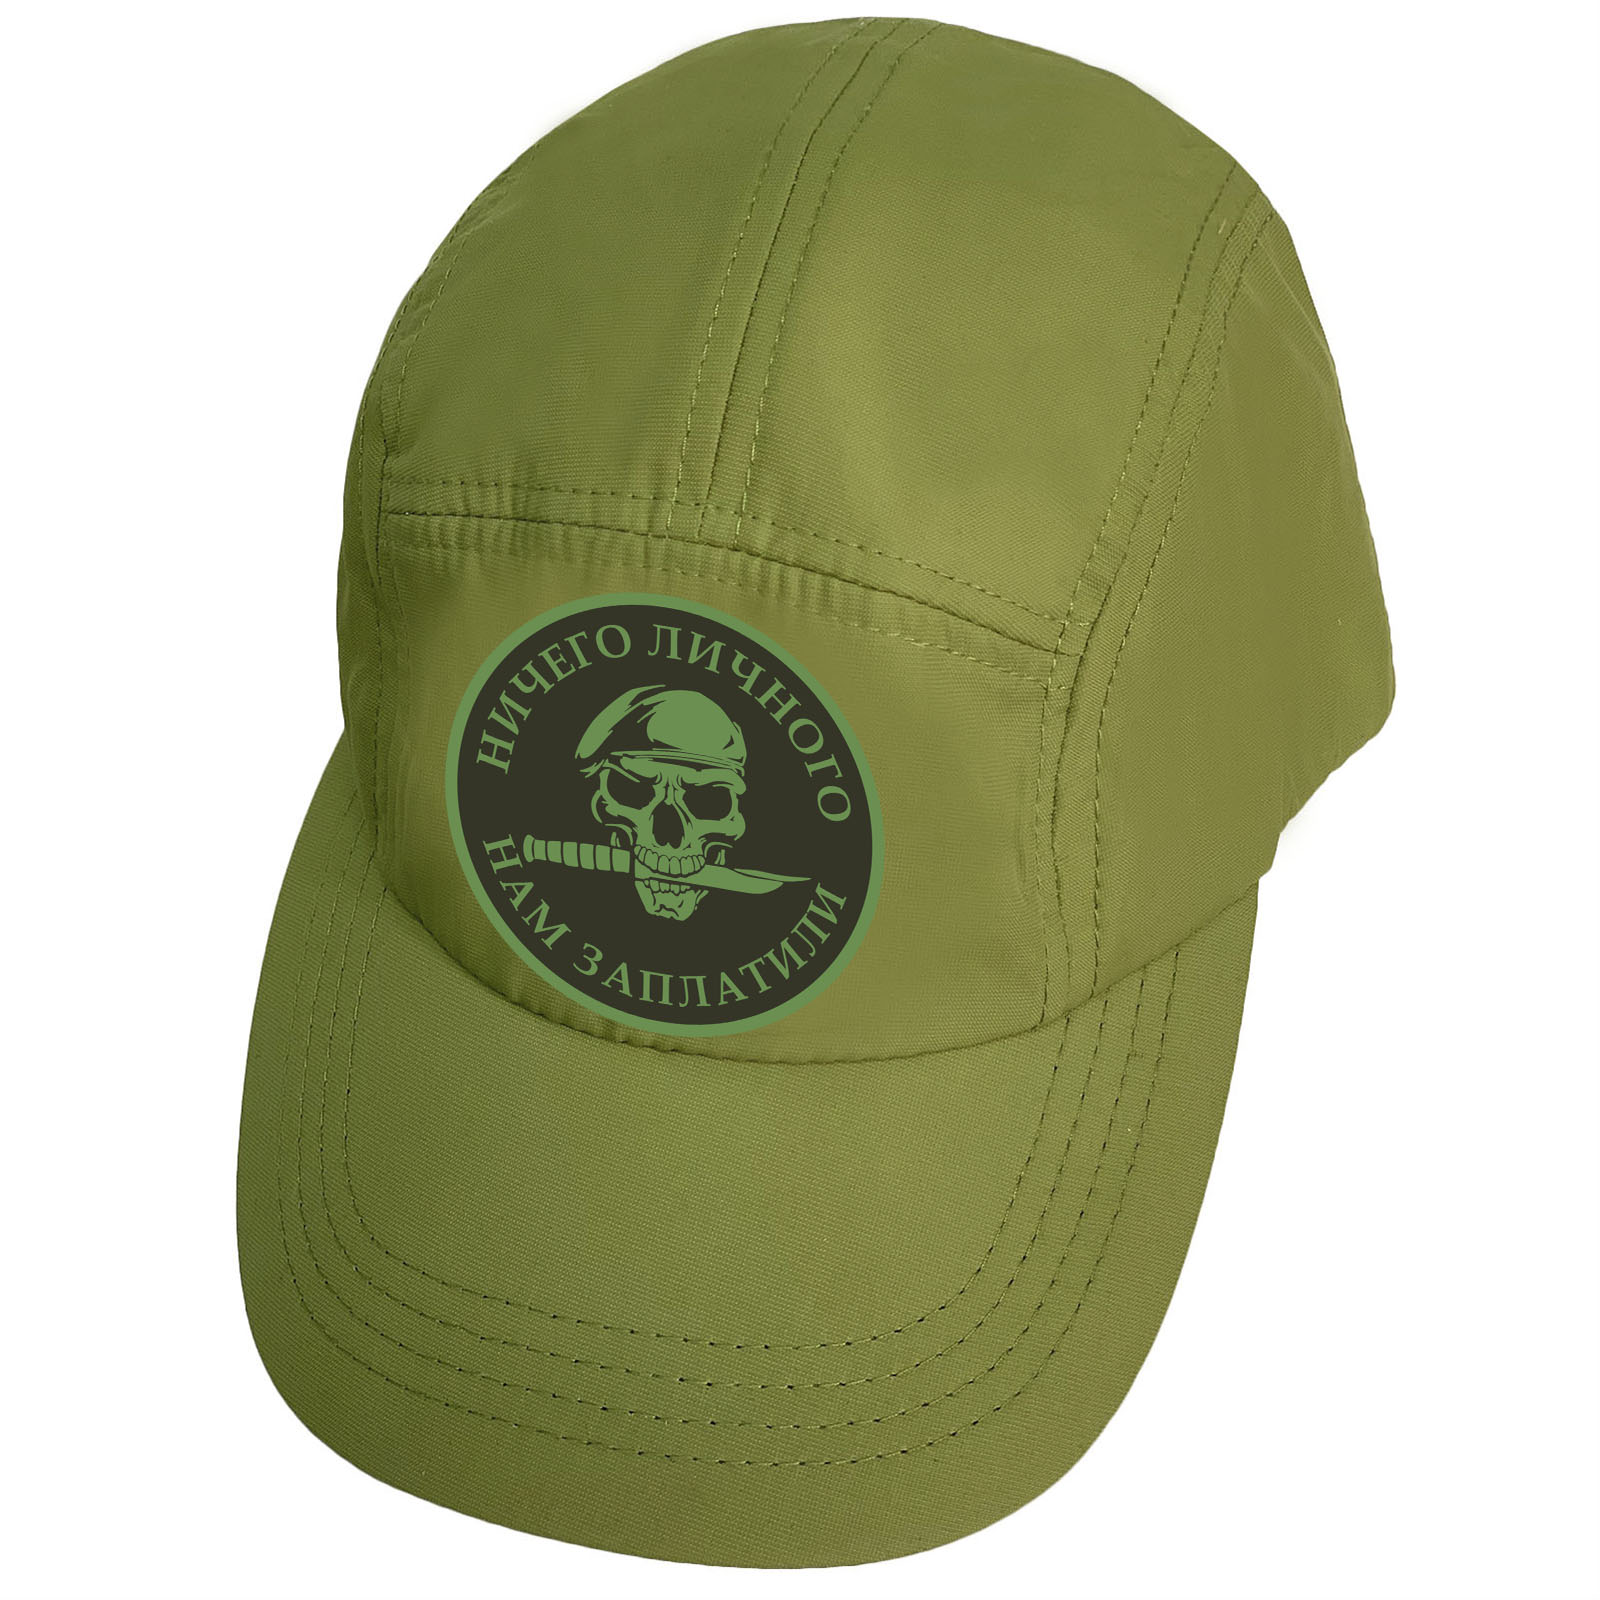 Купить практичную зеленую кепку-пятипанельку с термоаппликацией Ничего личного нам заплатили выгодно